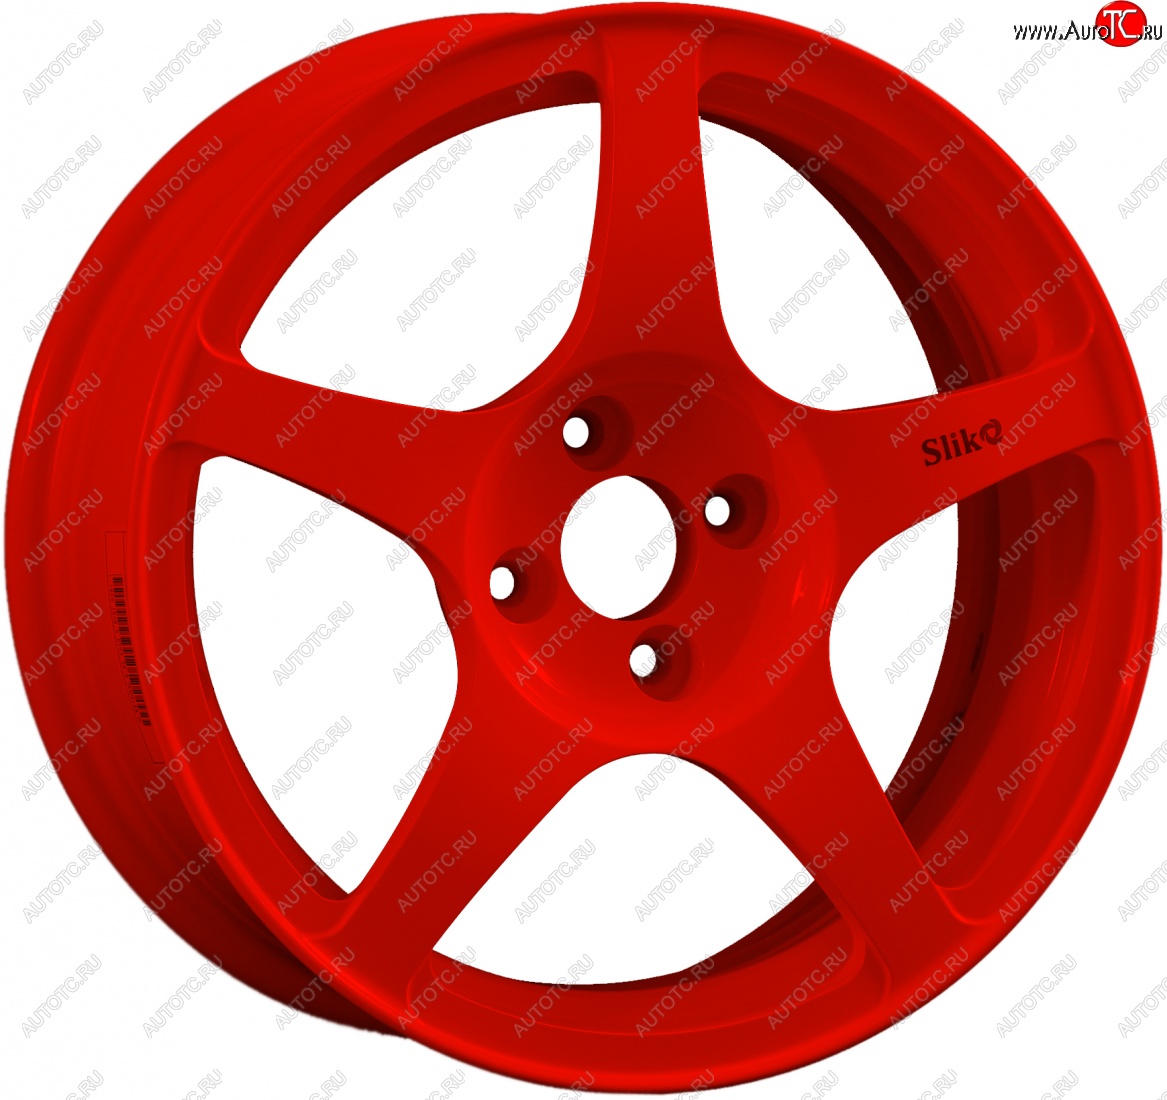 10 349 р. Кованый диск Slik classik R16x6.5 Красный (RED) 6.5x16 Honda Fit Aria GD дорестайлинг седан (2002-2005) 4x100.0xDIA56.1xET45.0 (Цвет: RED)